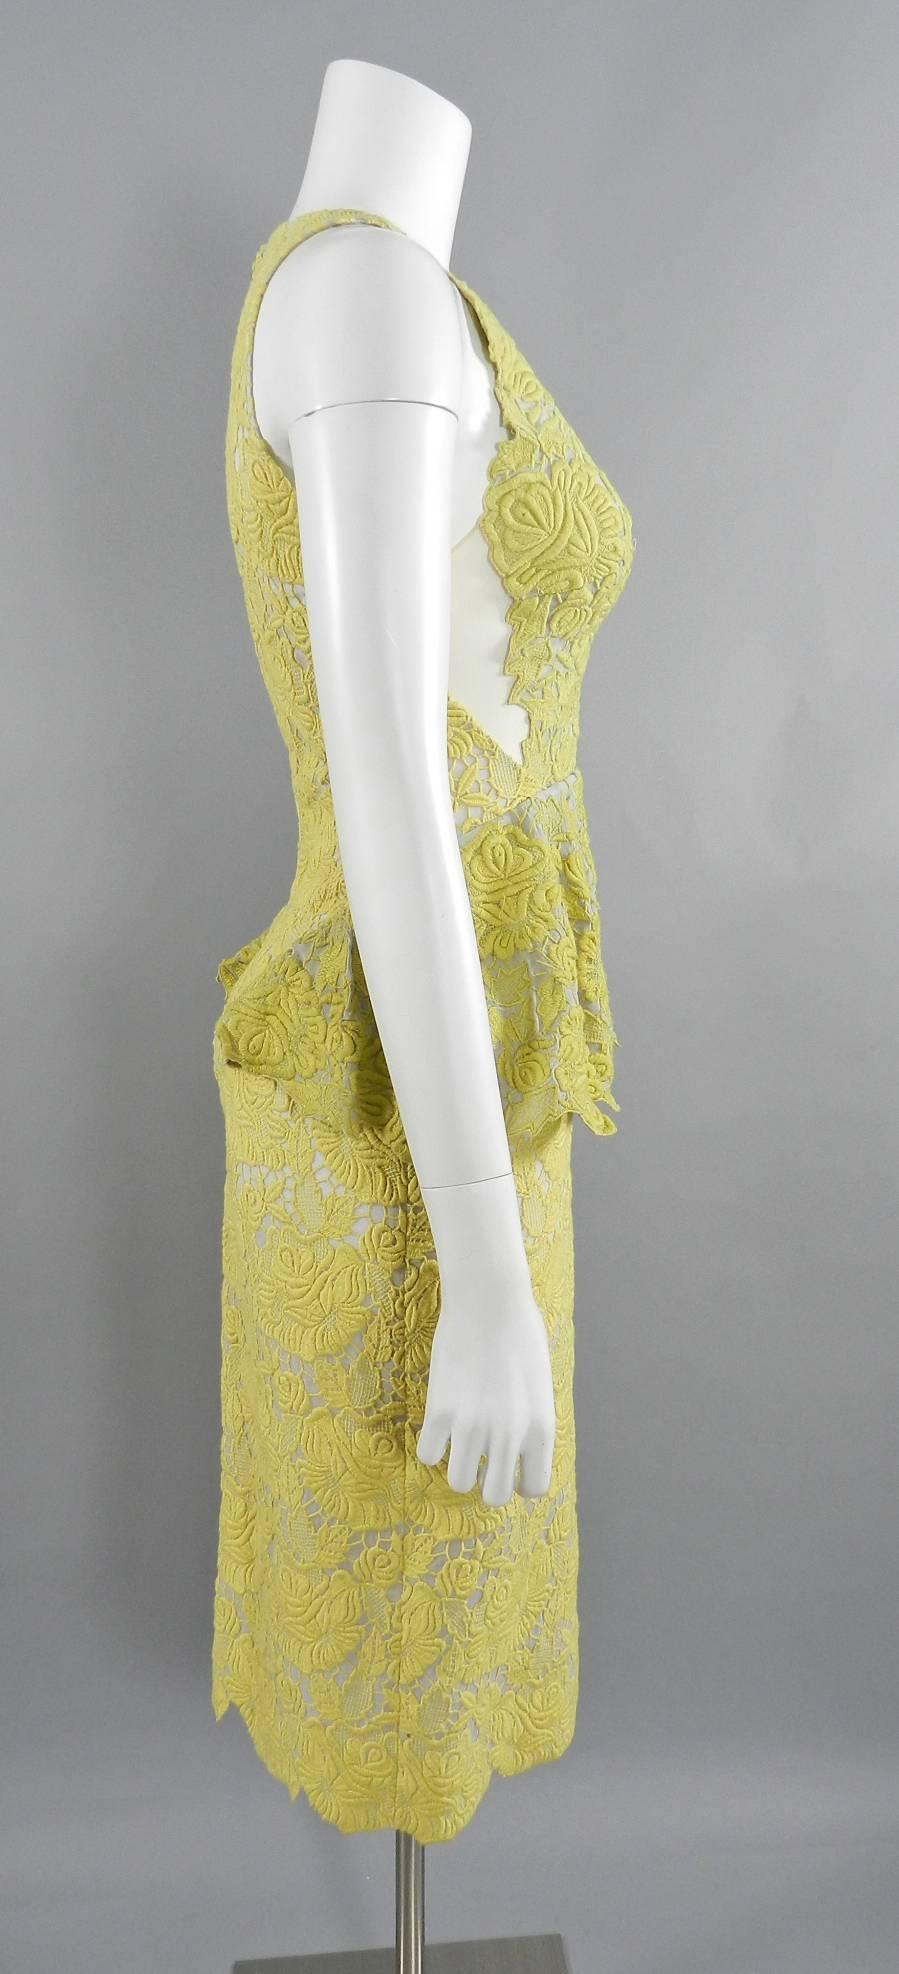 yellow lace dress